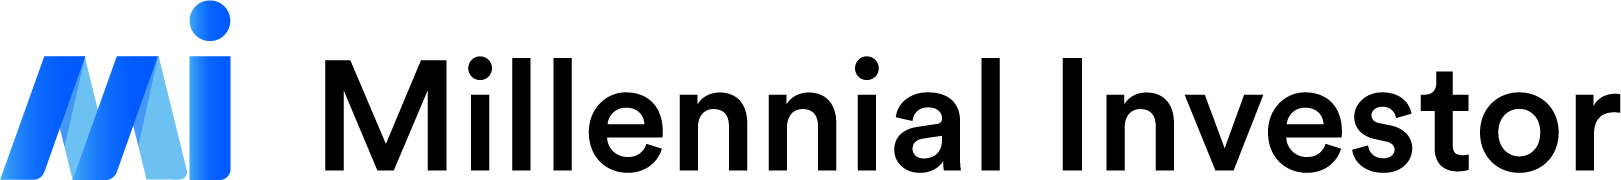 Millennial Investor Logo